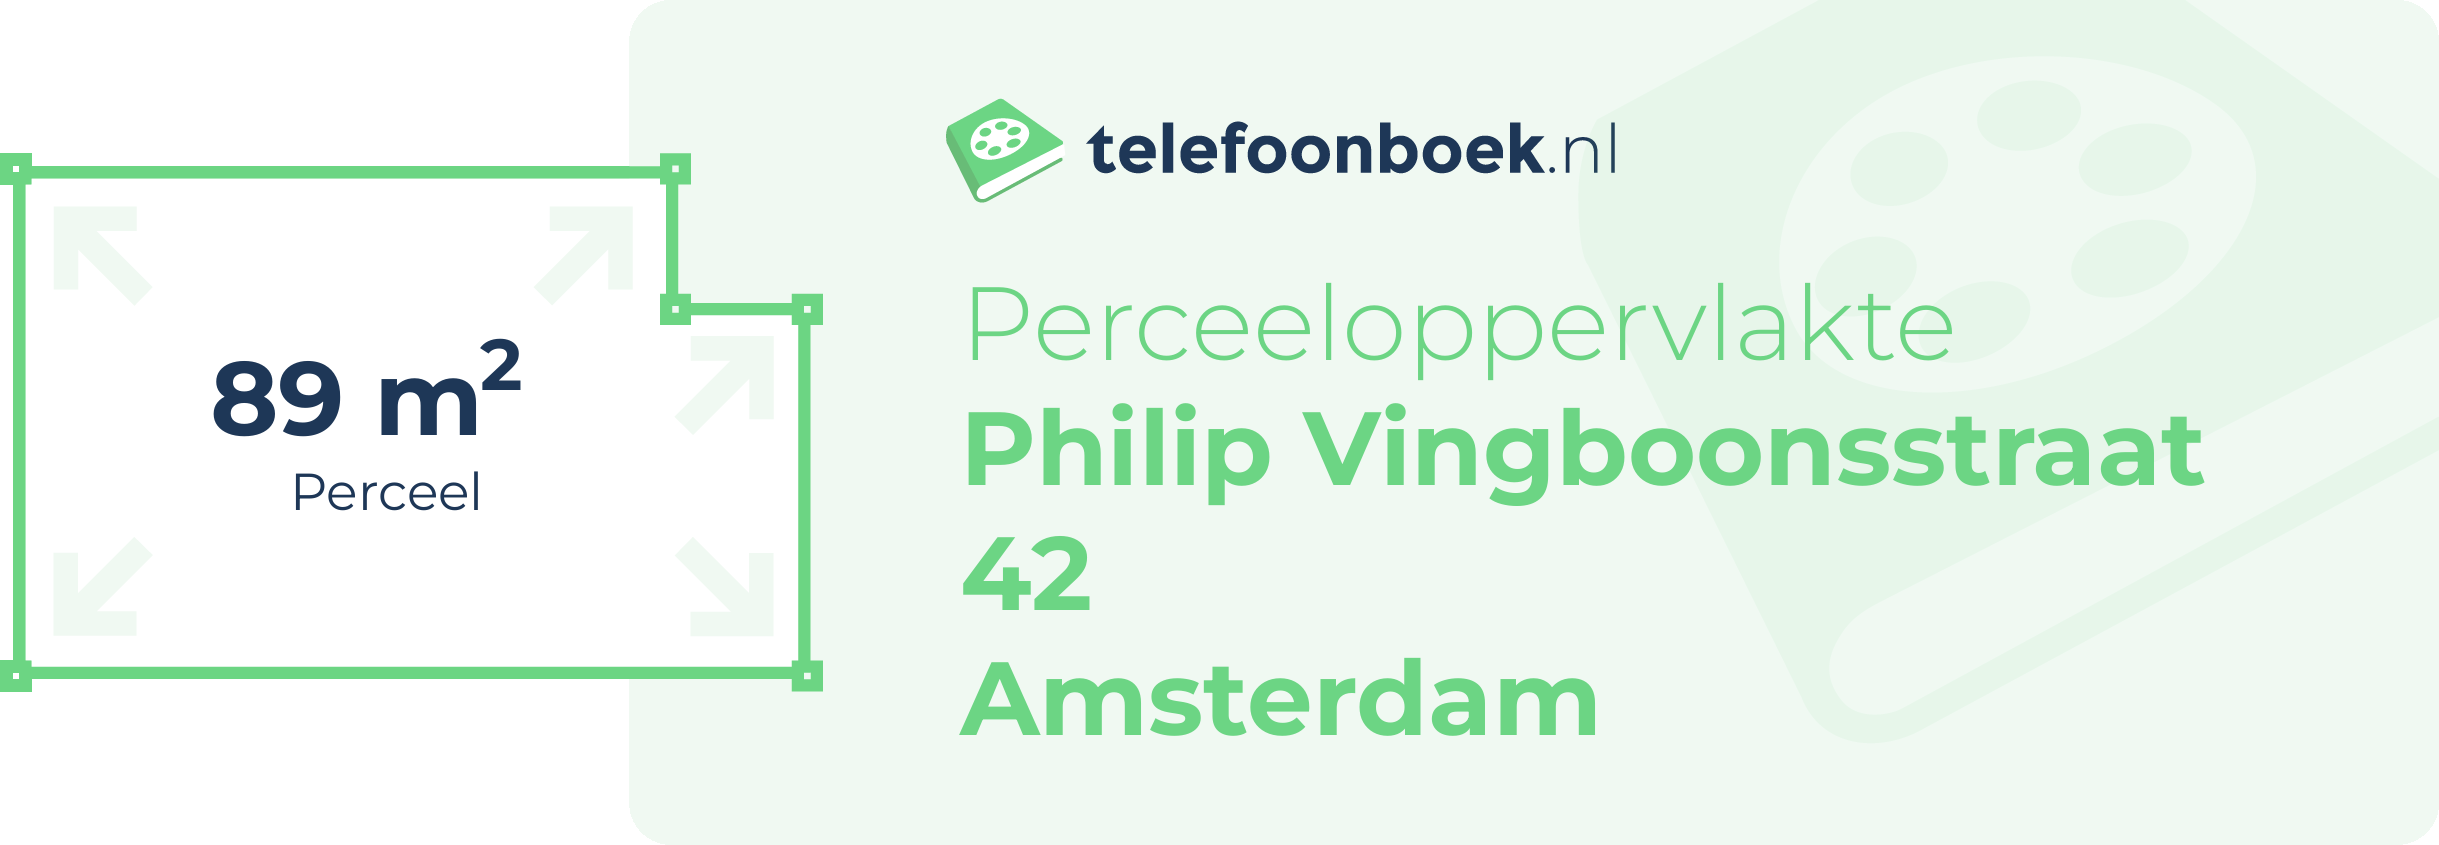 Perceeloppervlakte Philip Vingboonsstraat 42 Amsterdam